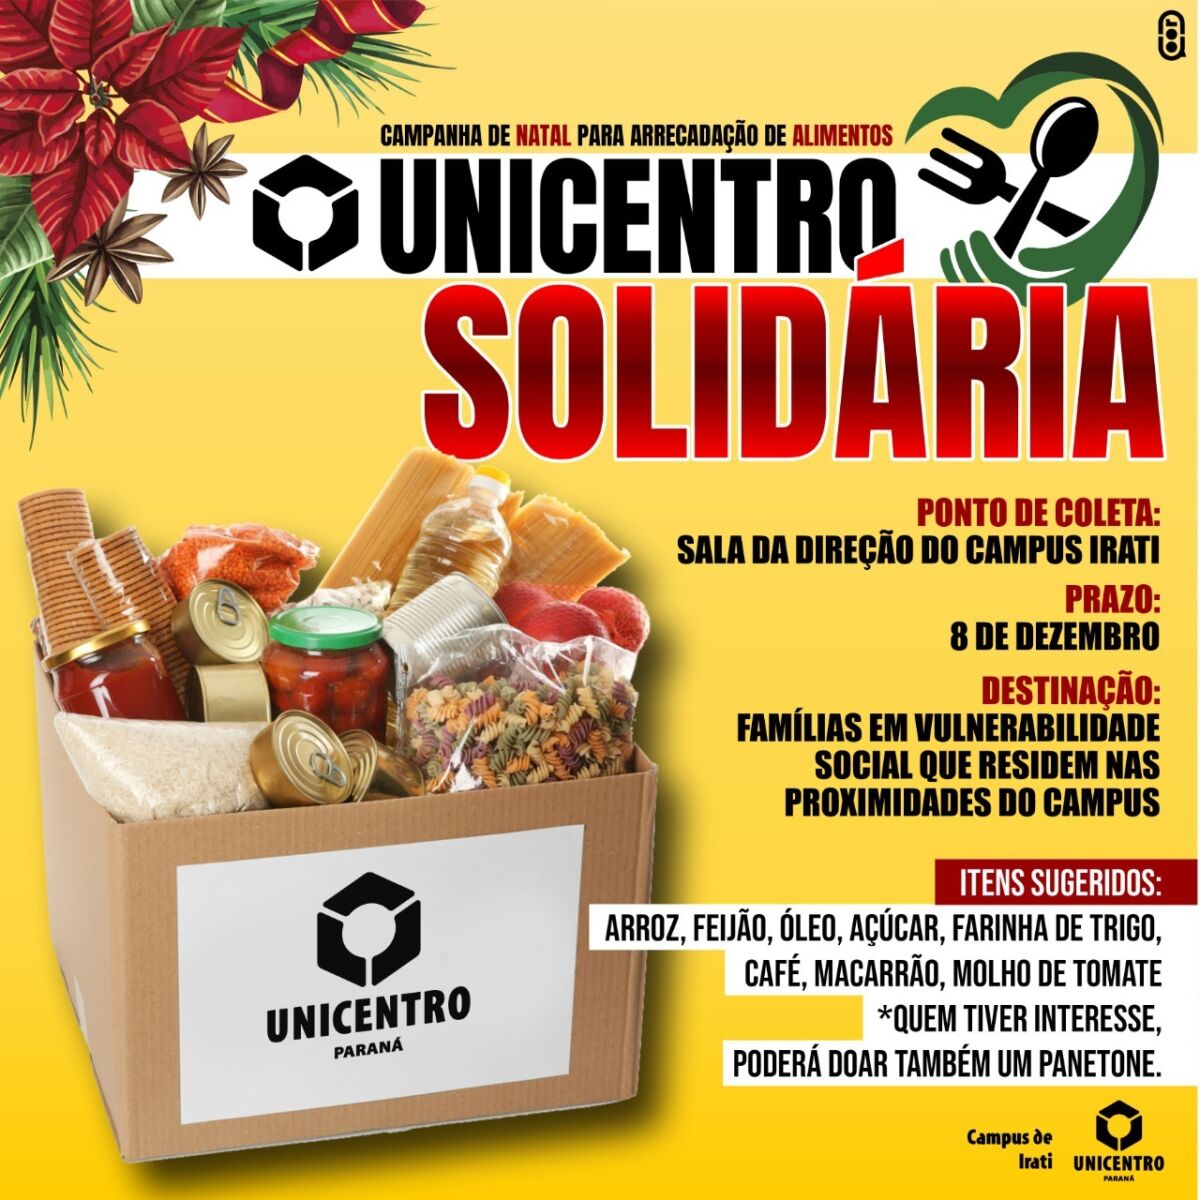 Campus de Irati lança campanha “Natal Solidário”